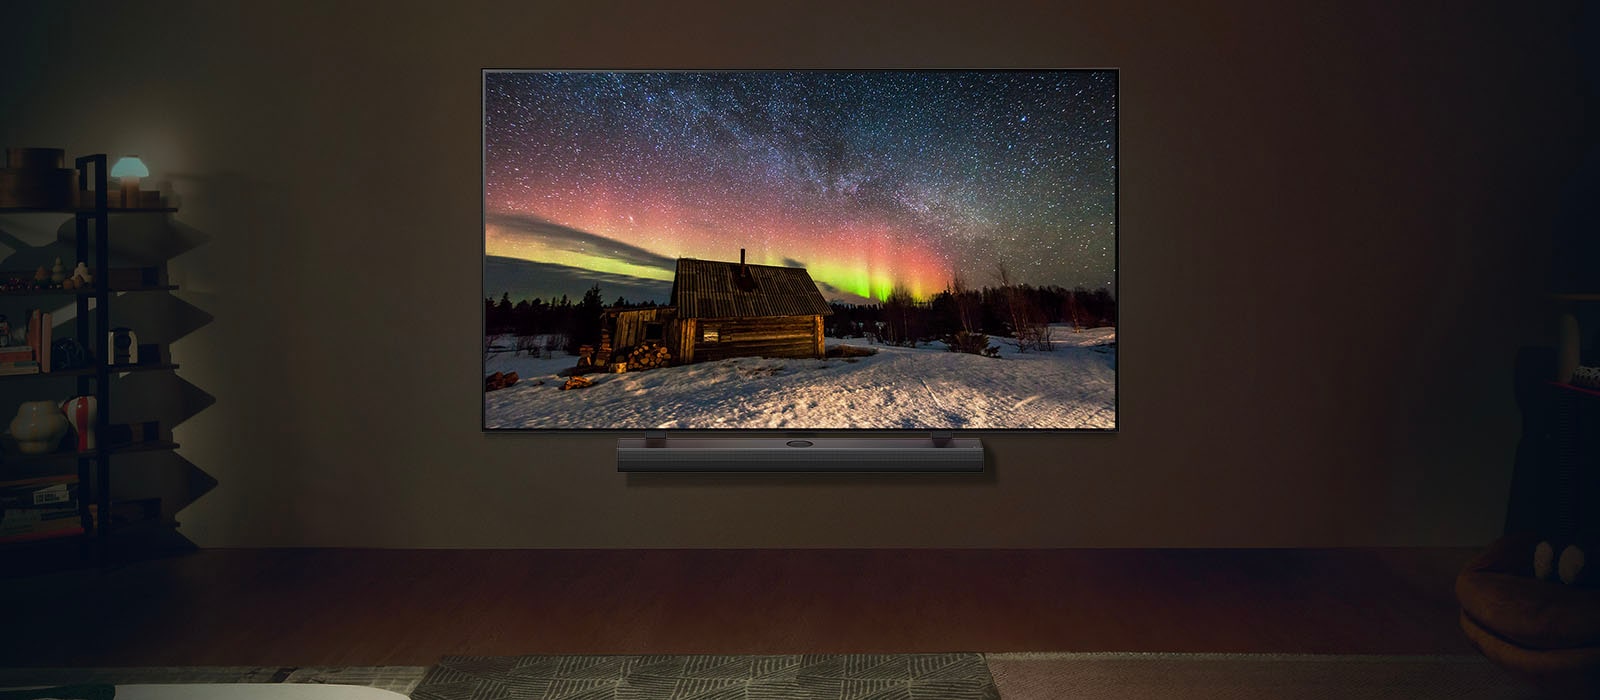 Slika LG televizora i LG Soundbar zvučnika u modernom životnom prostoru po noći. Slika polarne svetlosti prikazana je na idealnom nivou osvetljenosti.